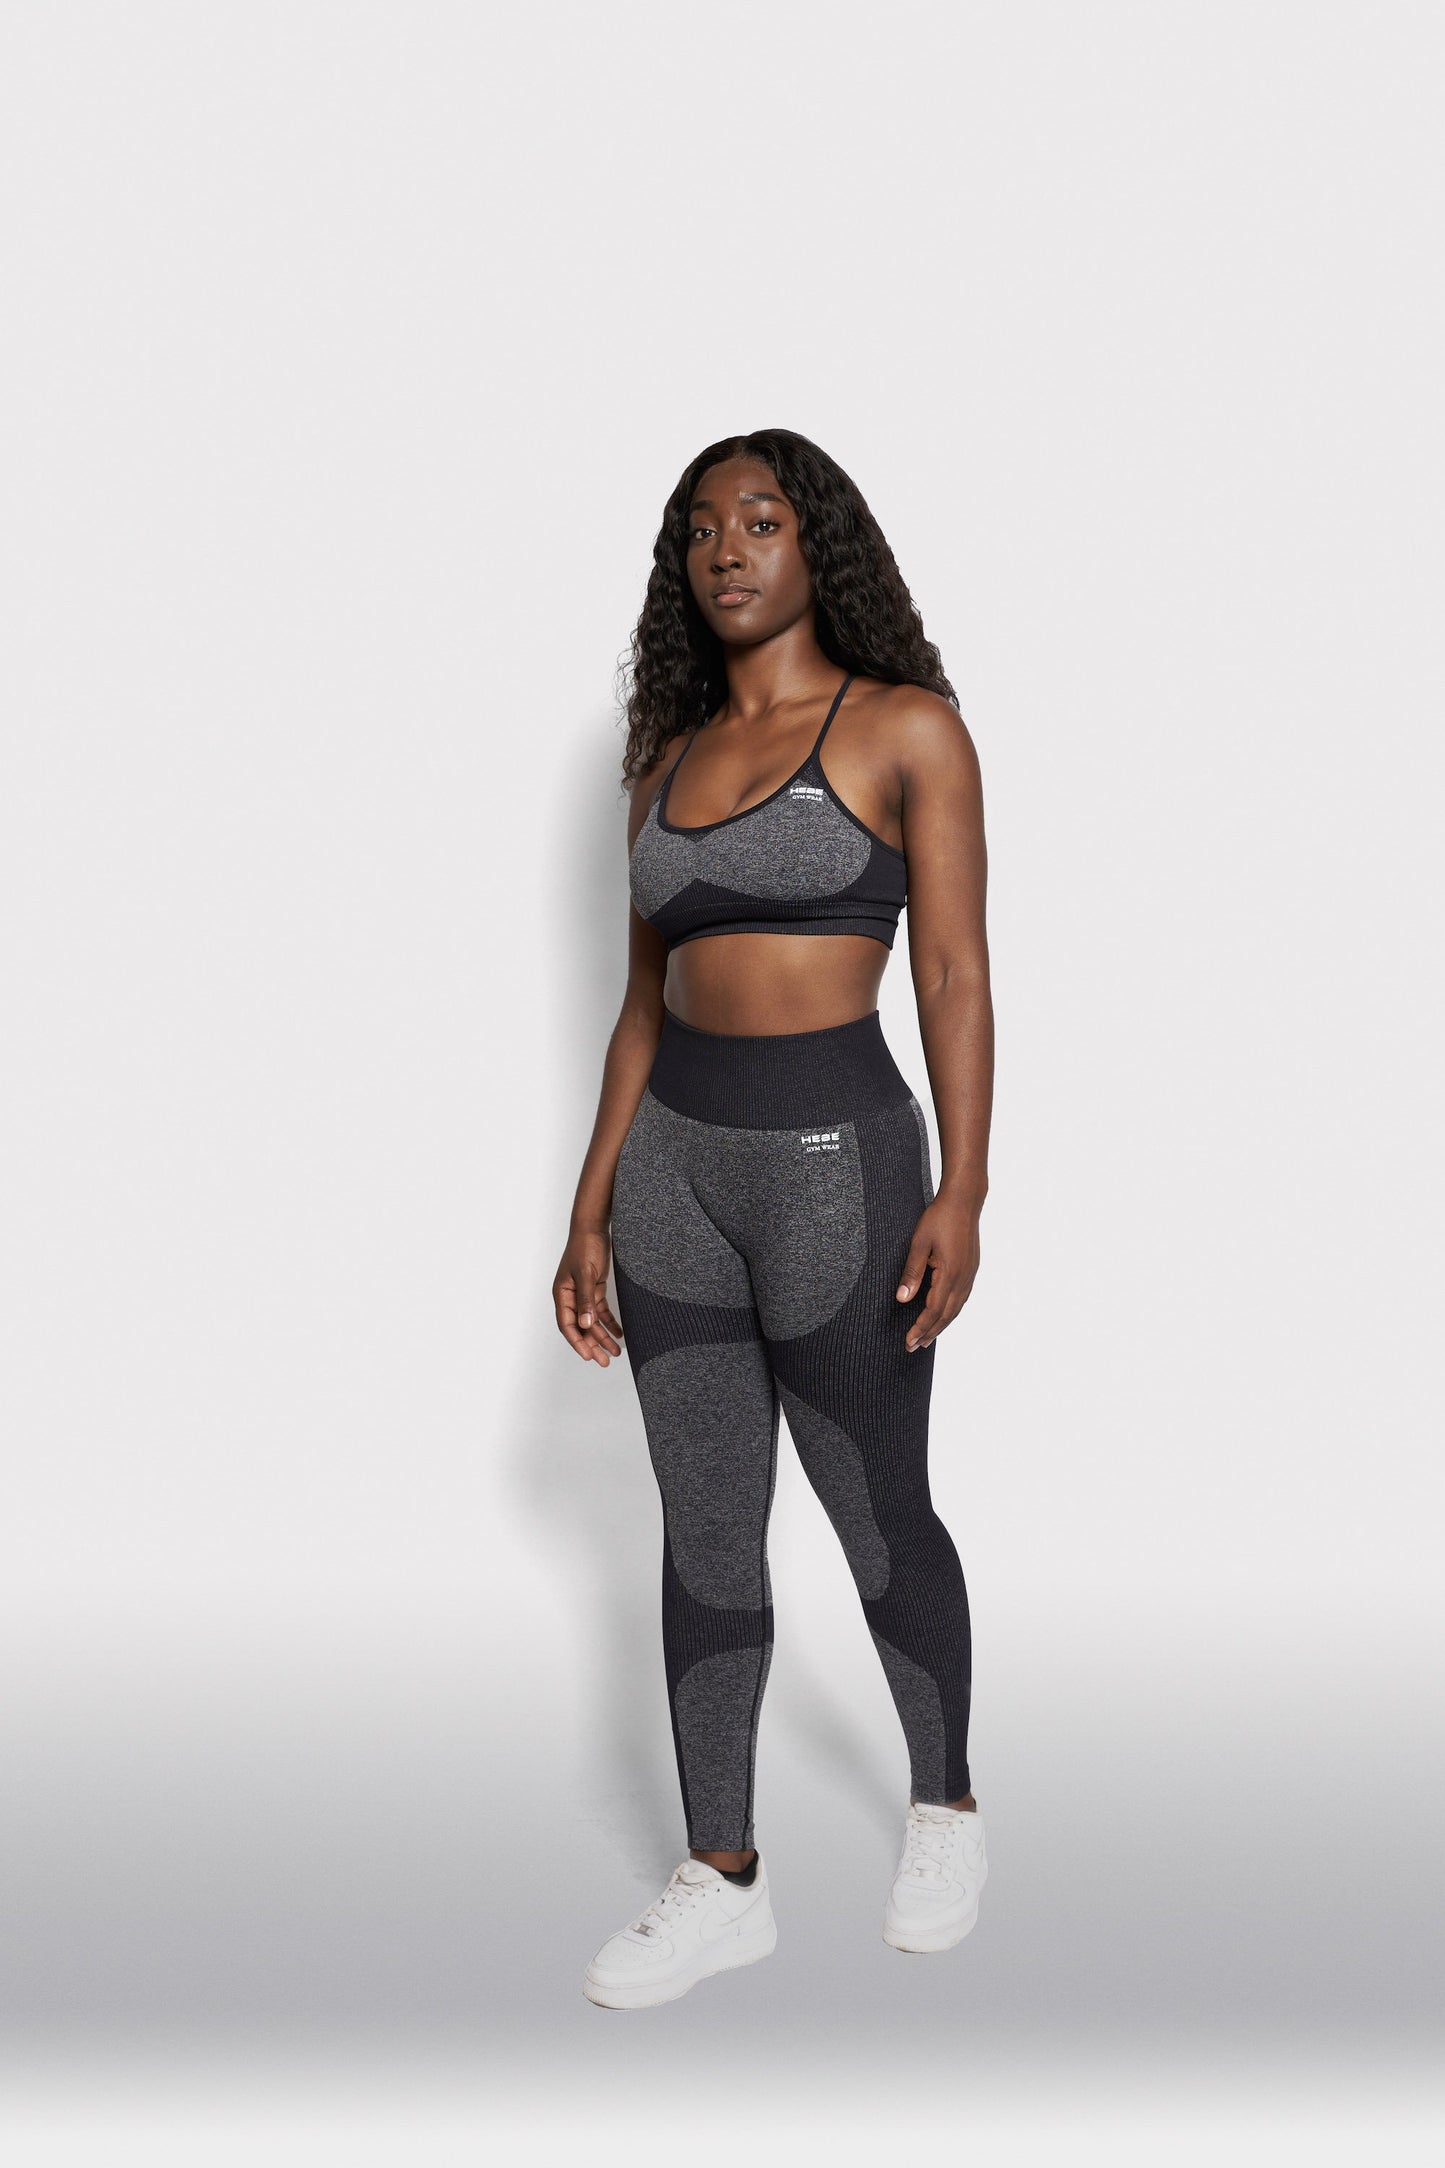 black girl wearing grey gymwear set